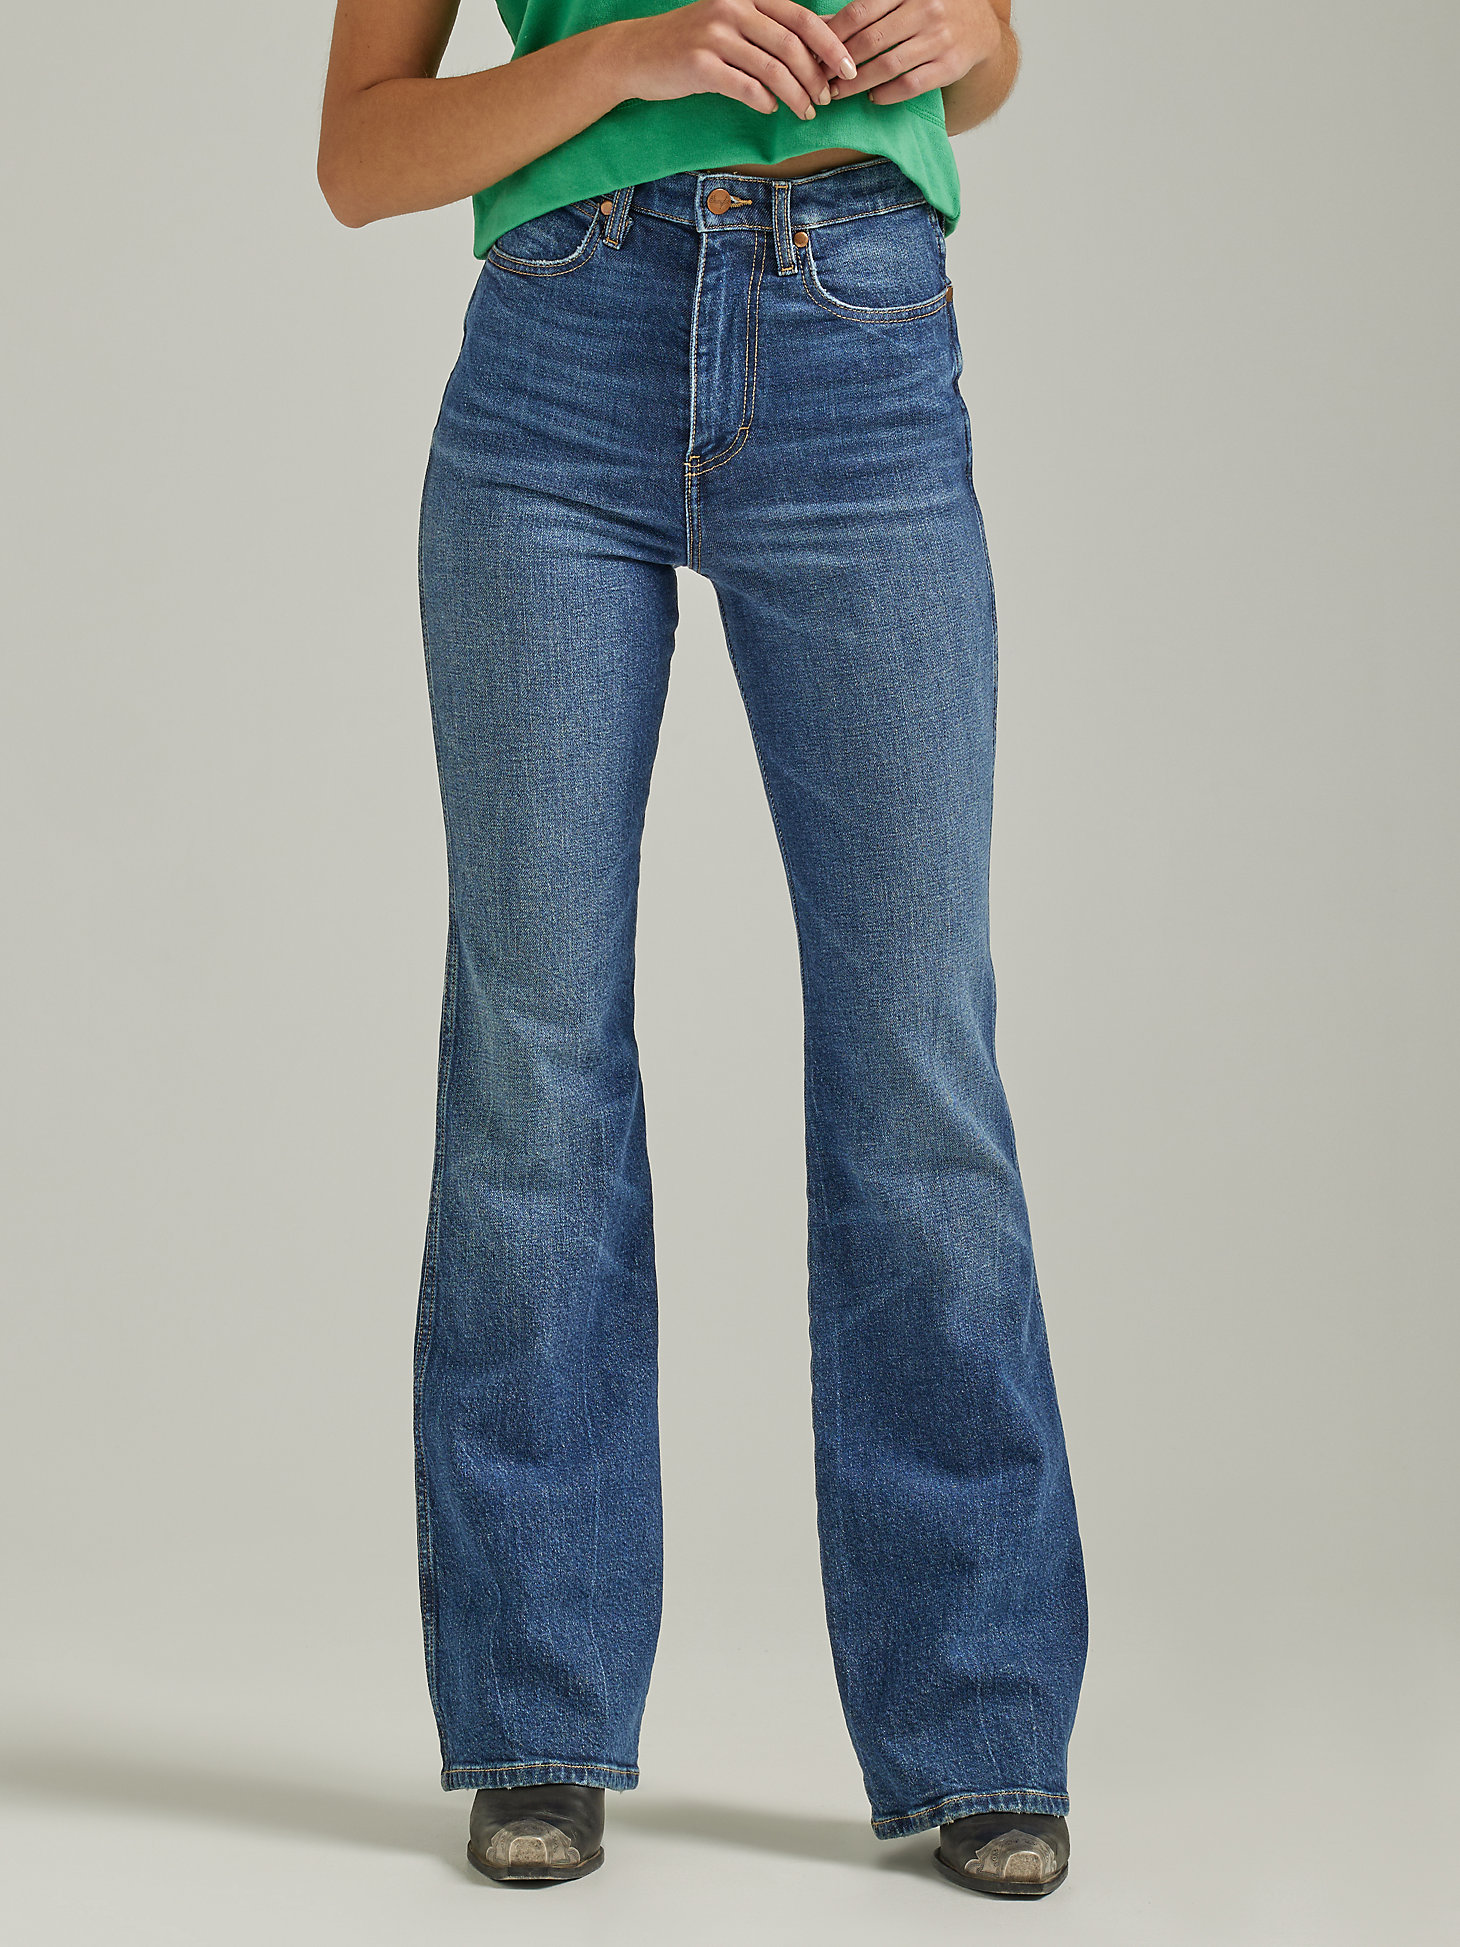 Women's Wrangler® Westward 626 High Rise Bootcut Jean in Twin Bridges alternative view 5